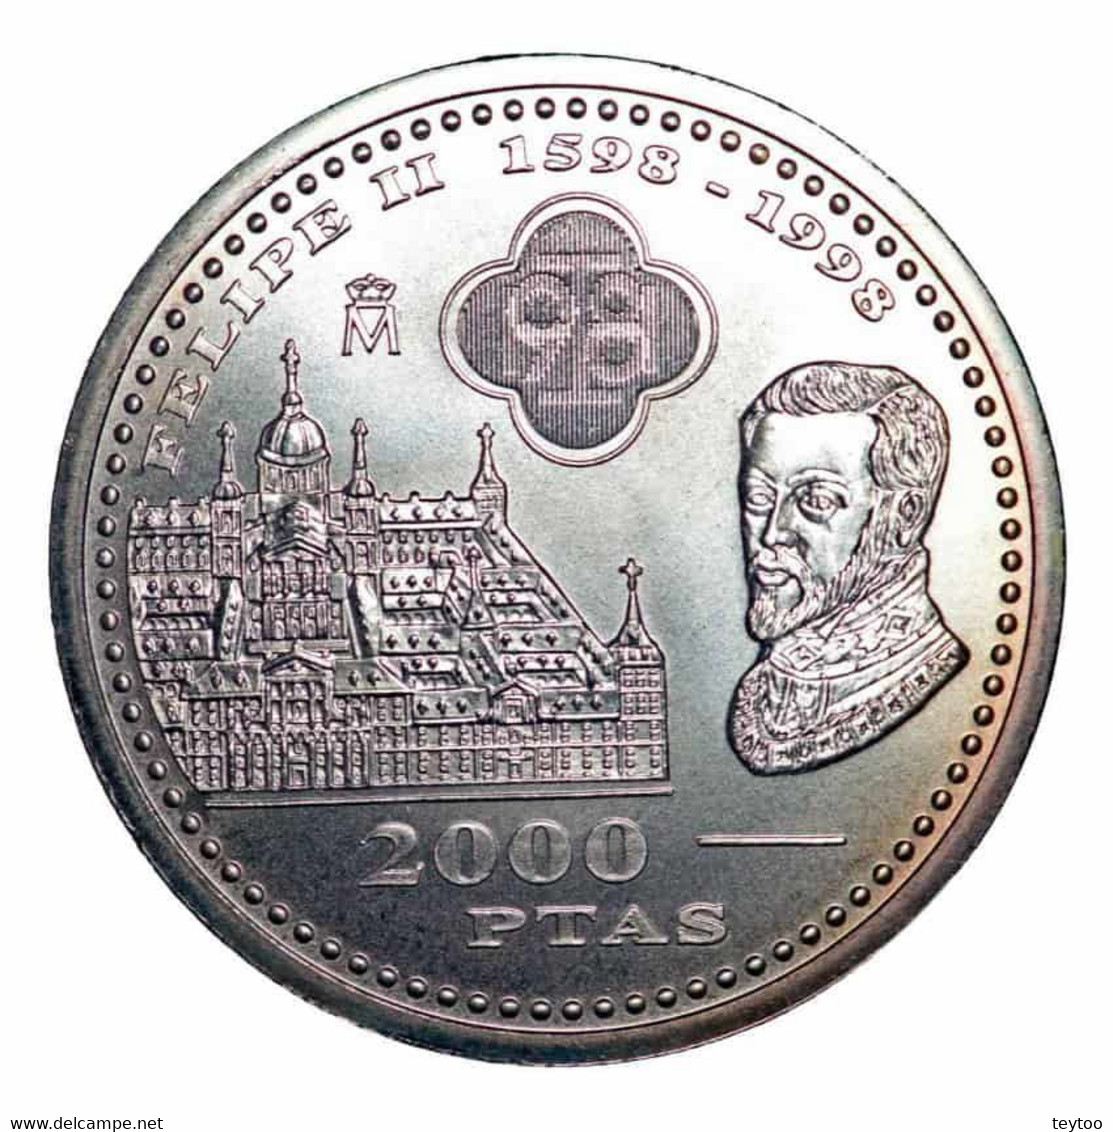 Monete da 2 euro - Catalogo delle monete - uCoin.net